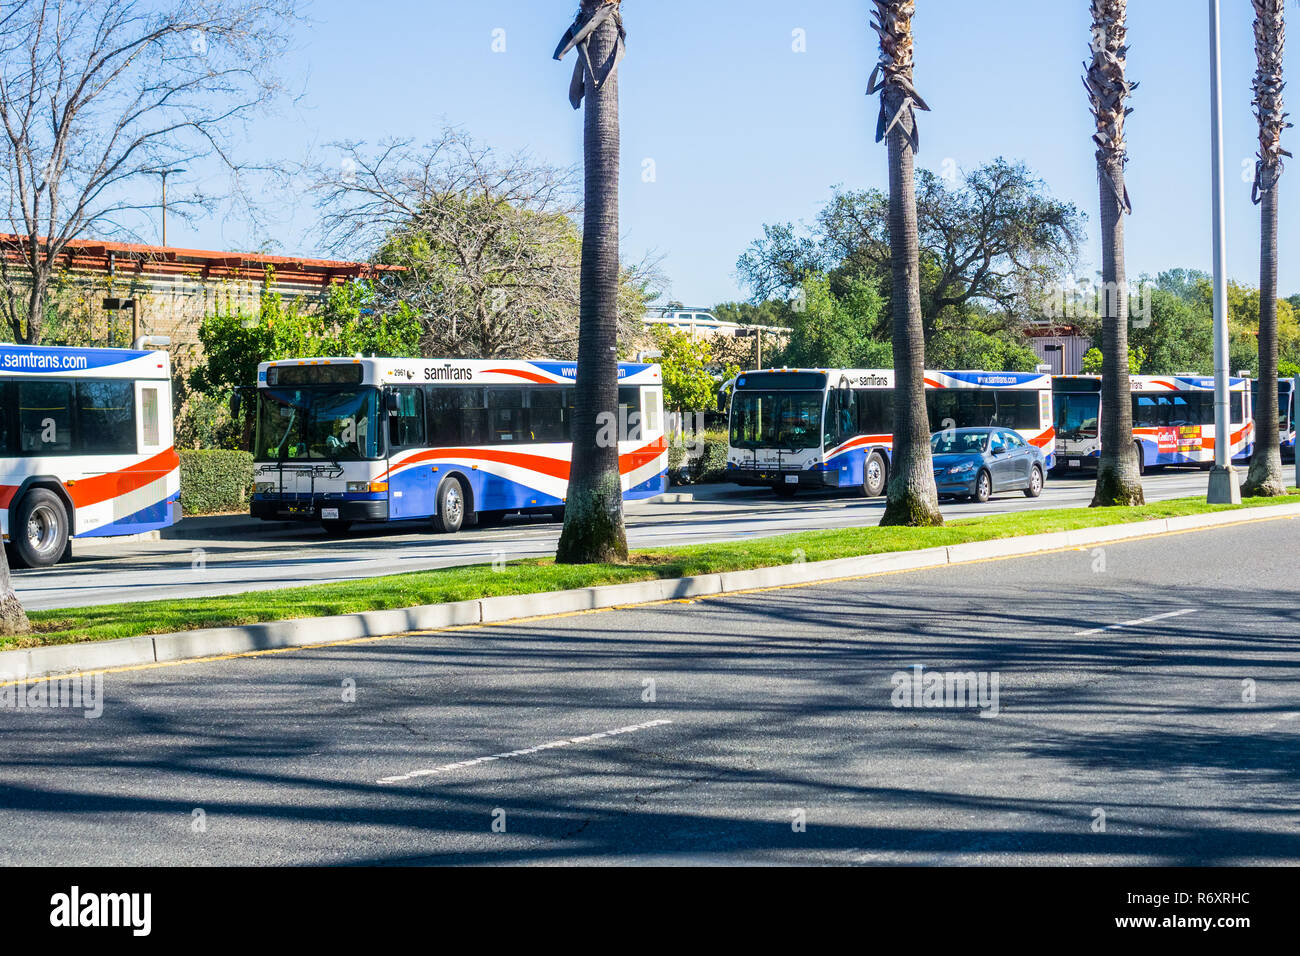 Februar 8, 2018 in Palo Alto/CA/USA - SamTrans Busse gestoppt am Bahnhof; SamTrans ist ein öffentlicher Transport Agency in und um San Mateo County, S Stockfoto